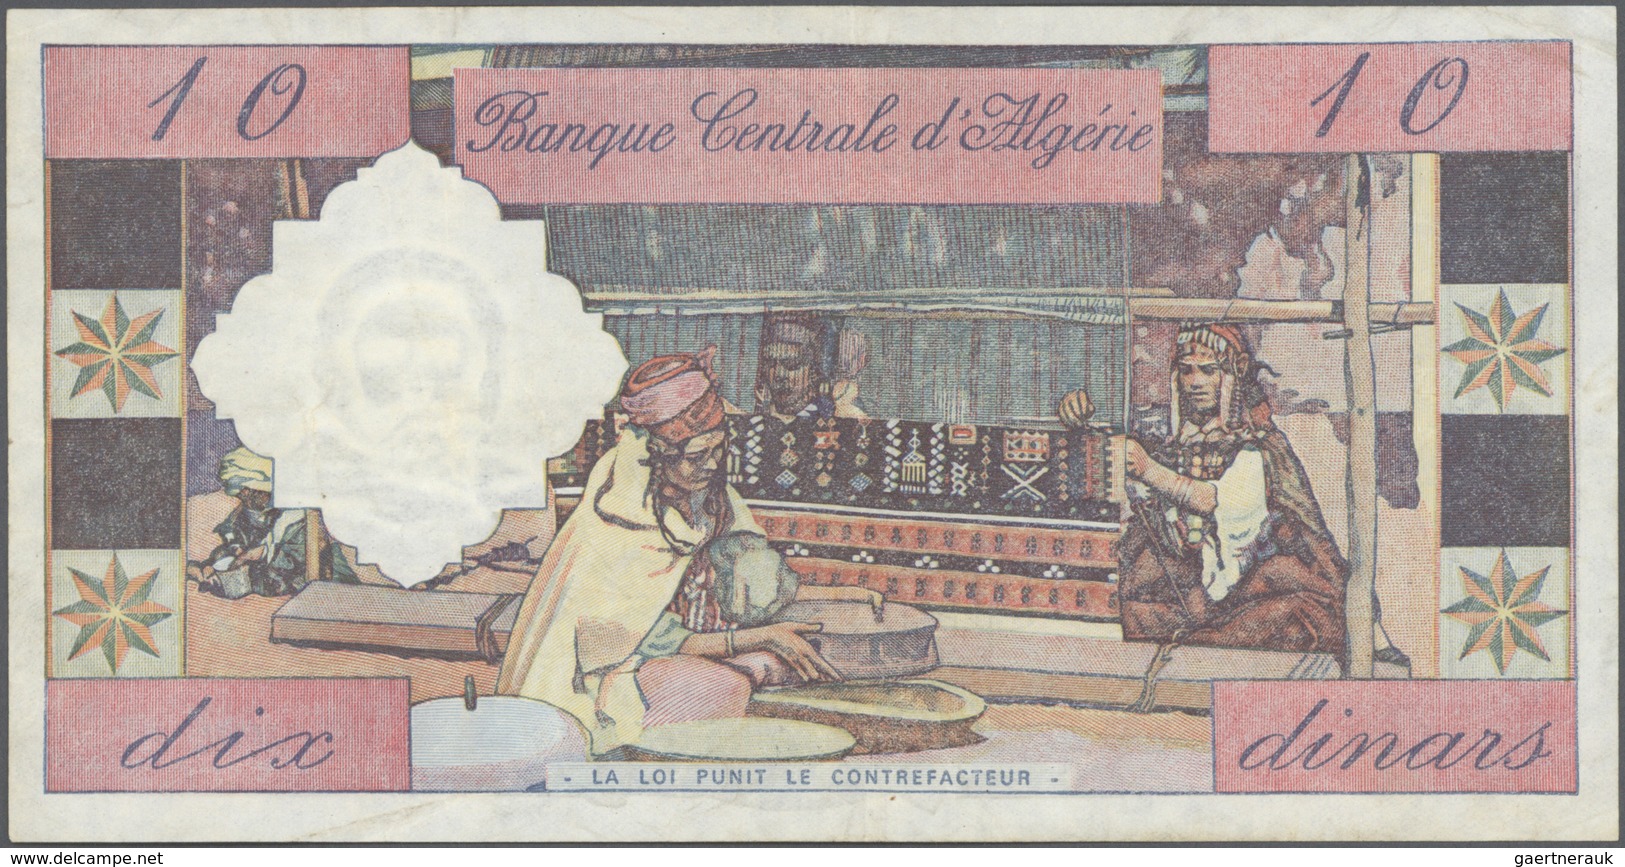 Algeria / Algerien: Set Of 2 Notes Banque Centrale D'Algerie Containing 10 & 100 Dinars 1964 P. 123, - Algerien